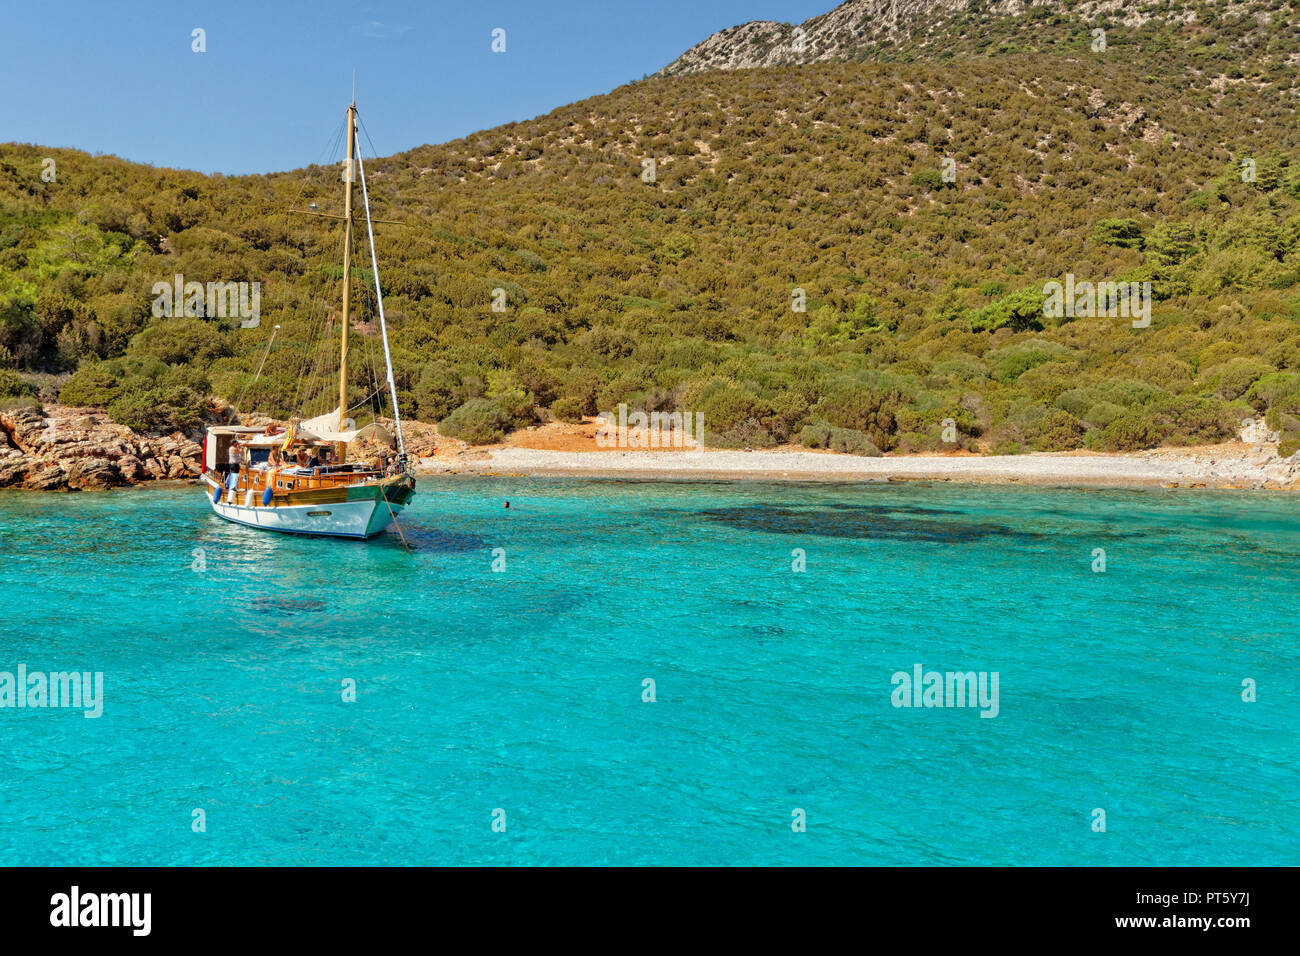 Caicco barca ormeggiata a Poyraz bay sull'isola Karaada (Isola nera) Vicino Bodrum nella Provincia di Mugla, Turchia. Foto Stock